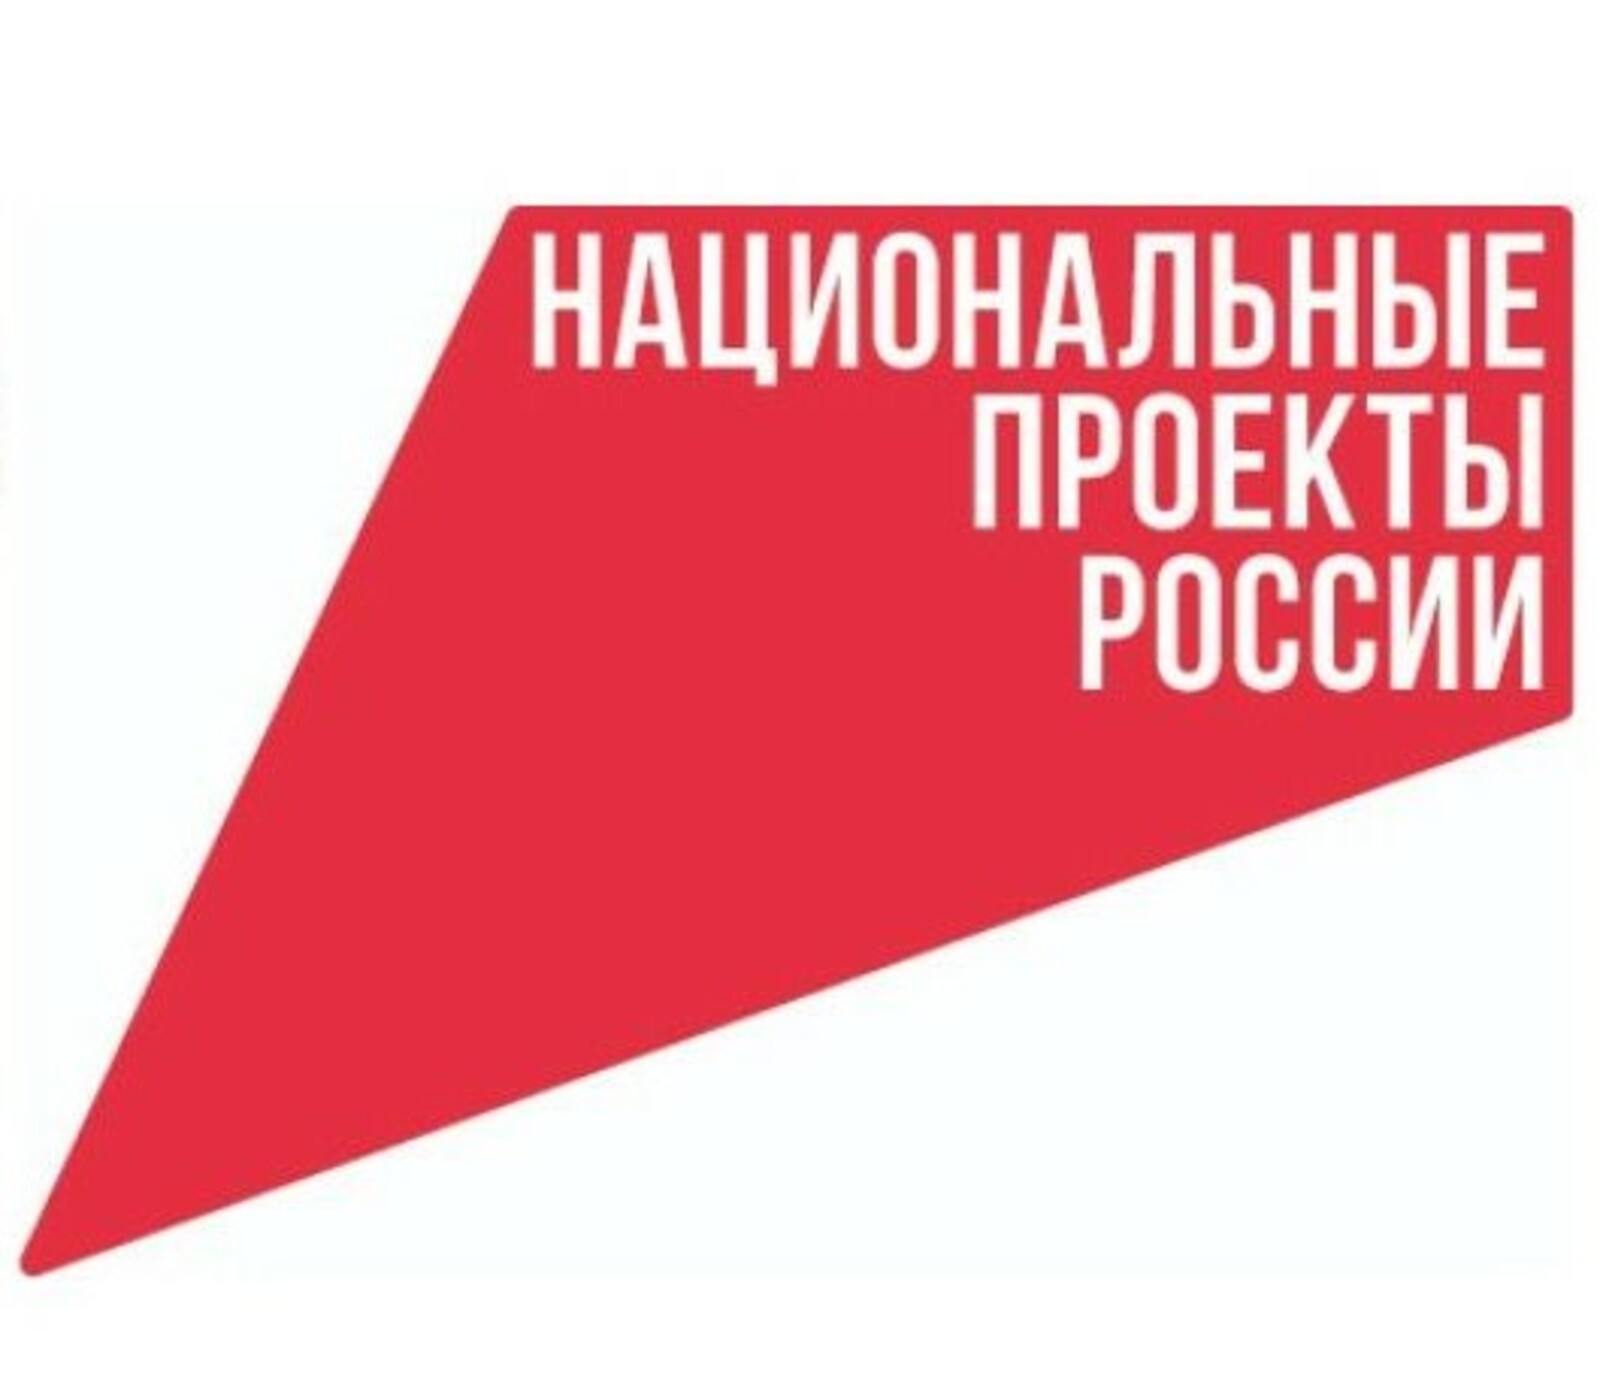 Поступки, проекты, программы региона: обновленная модель Премии #МЫВМЕСТЕ предлагает Республике Башкортостан новые номинации и возможности